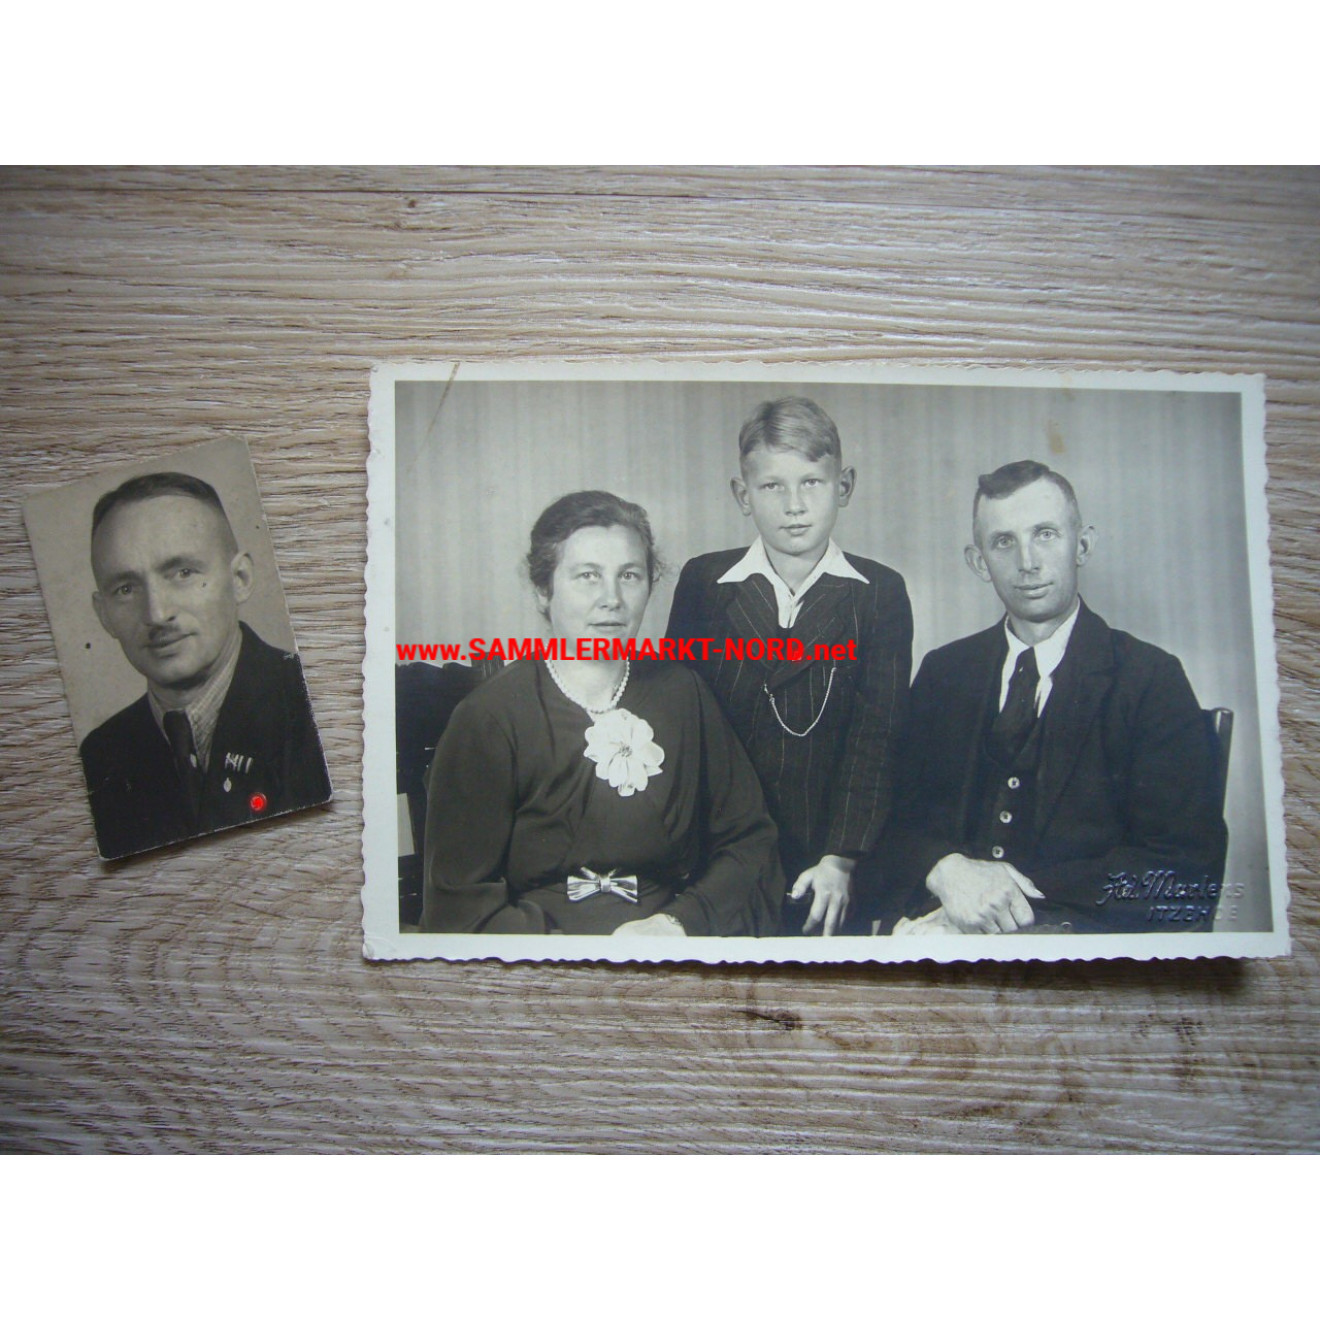 2 x Portrait Foto Junge und Mann mit HJ & NSDAP Mitgliedsabzeichen